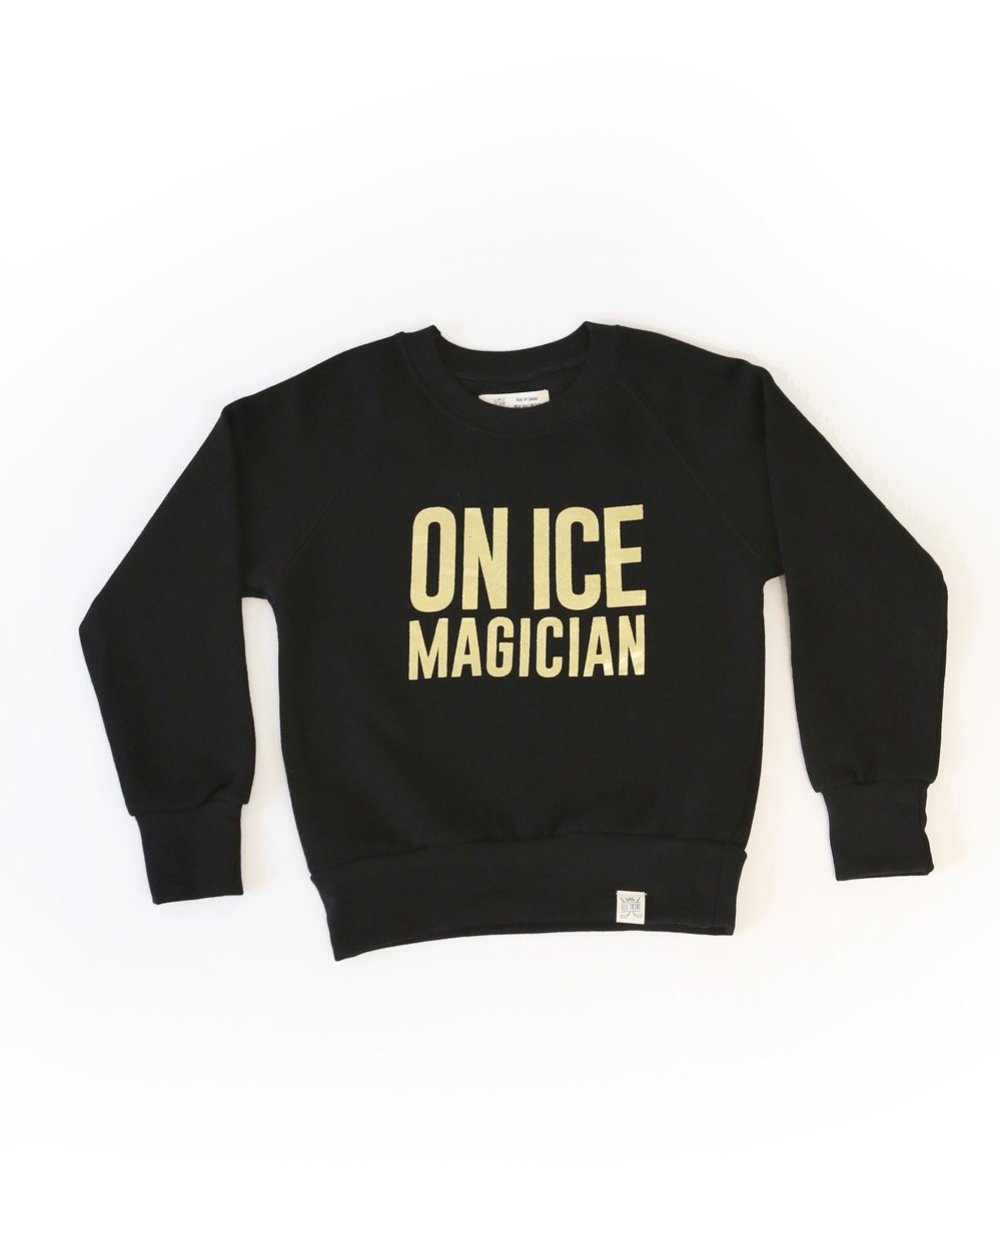 On Ice Magician Kid's Sweatshirt